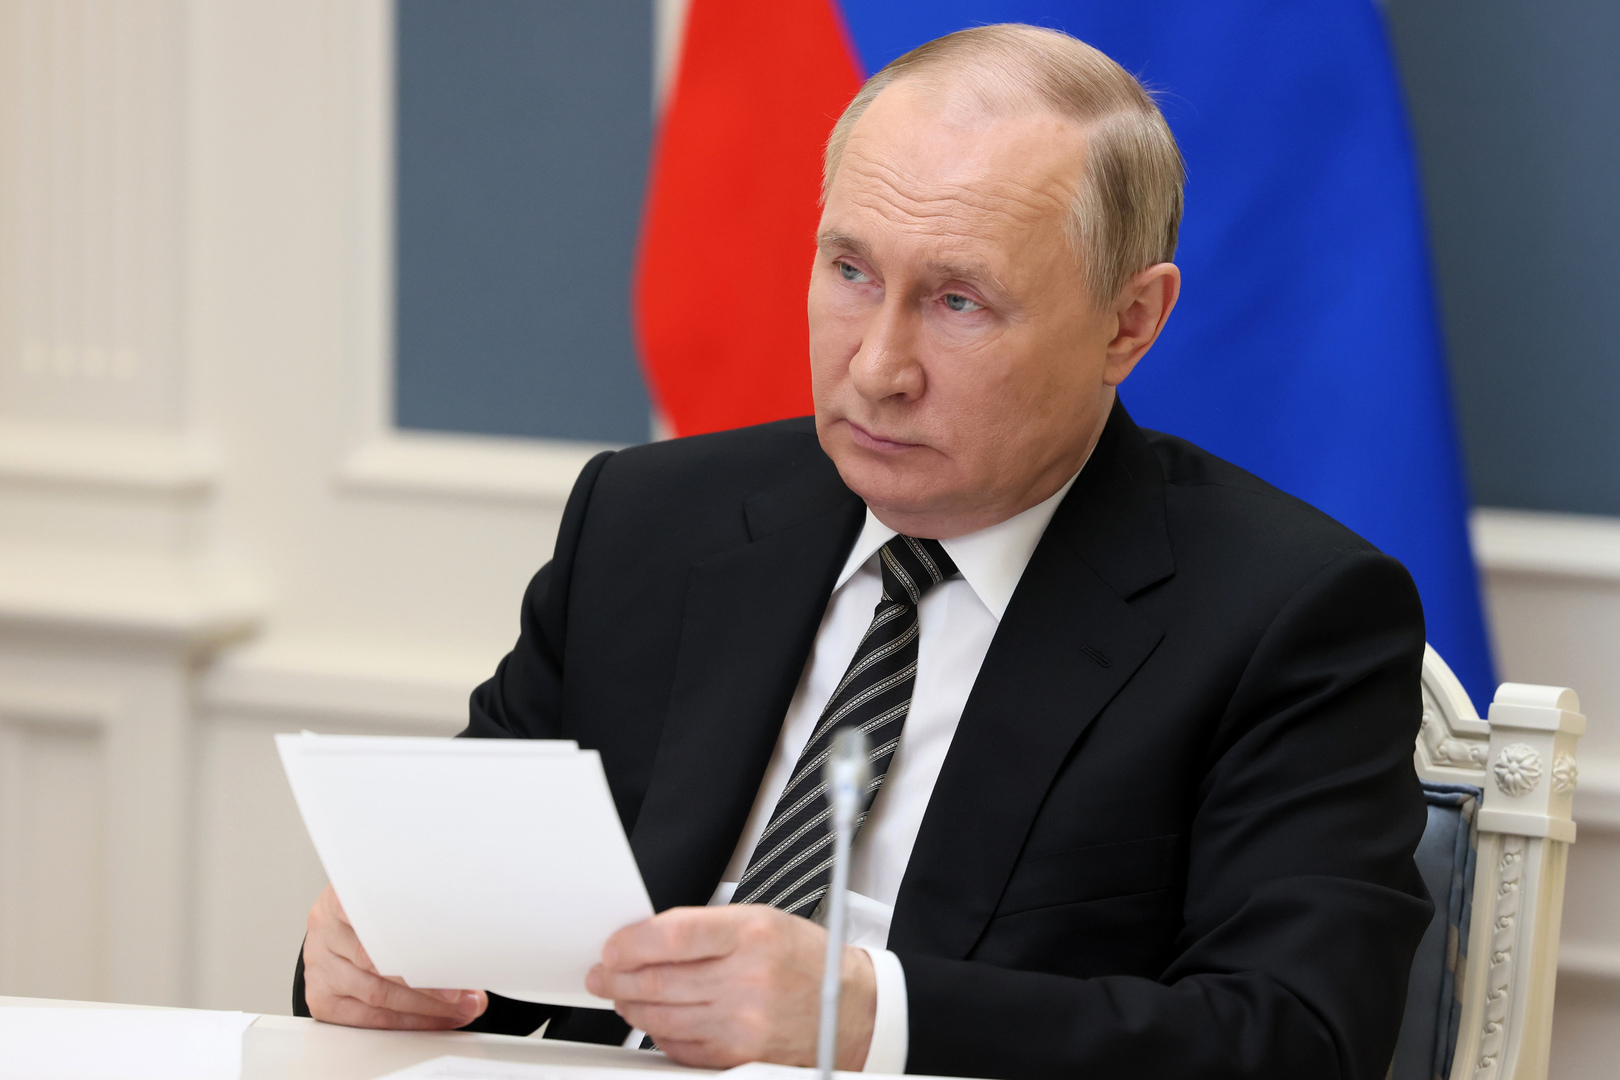 Crise alimentaire mondiale : Vladimir Poutine balaie les accusations «infondées» visant la Russie